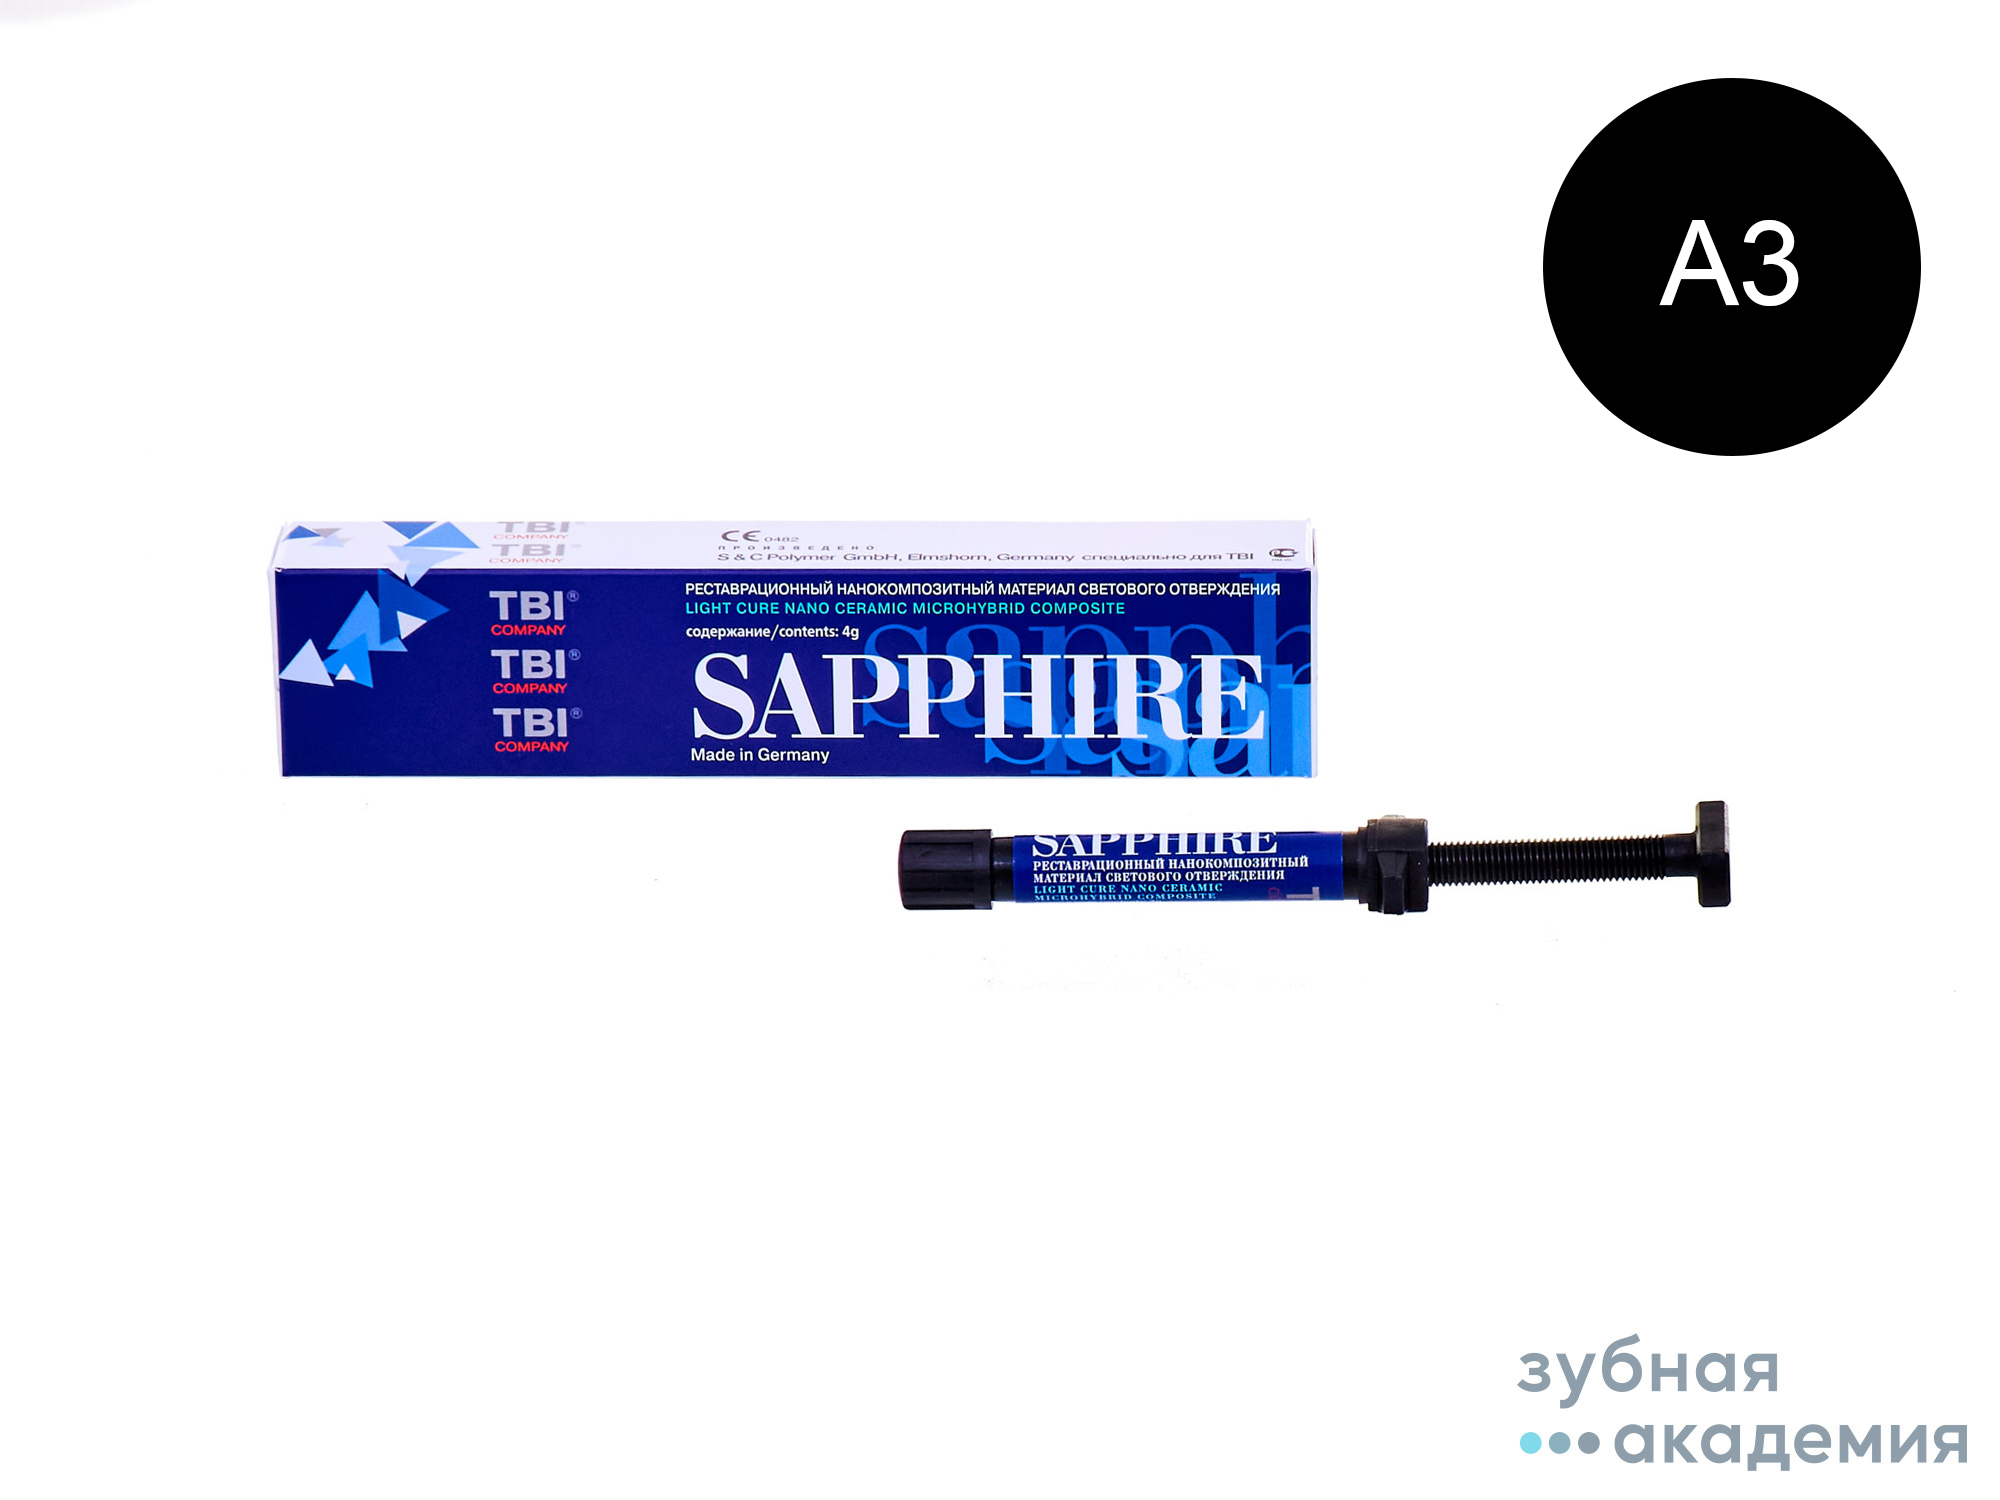 Sapphire А3 / Сапфир A3 нанокомпозит (4 г) TBI/S&C/Германия